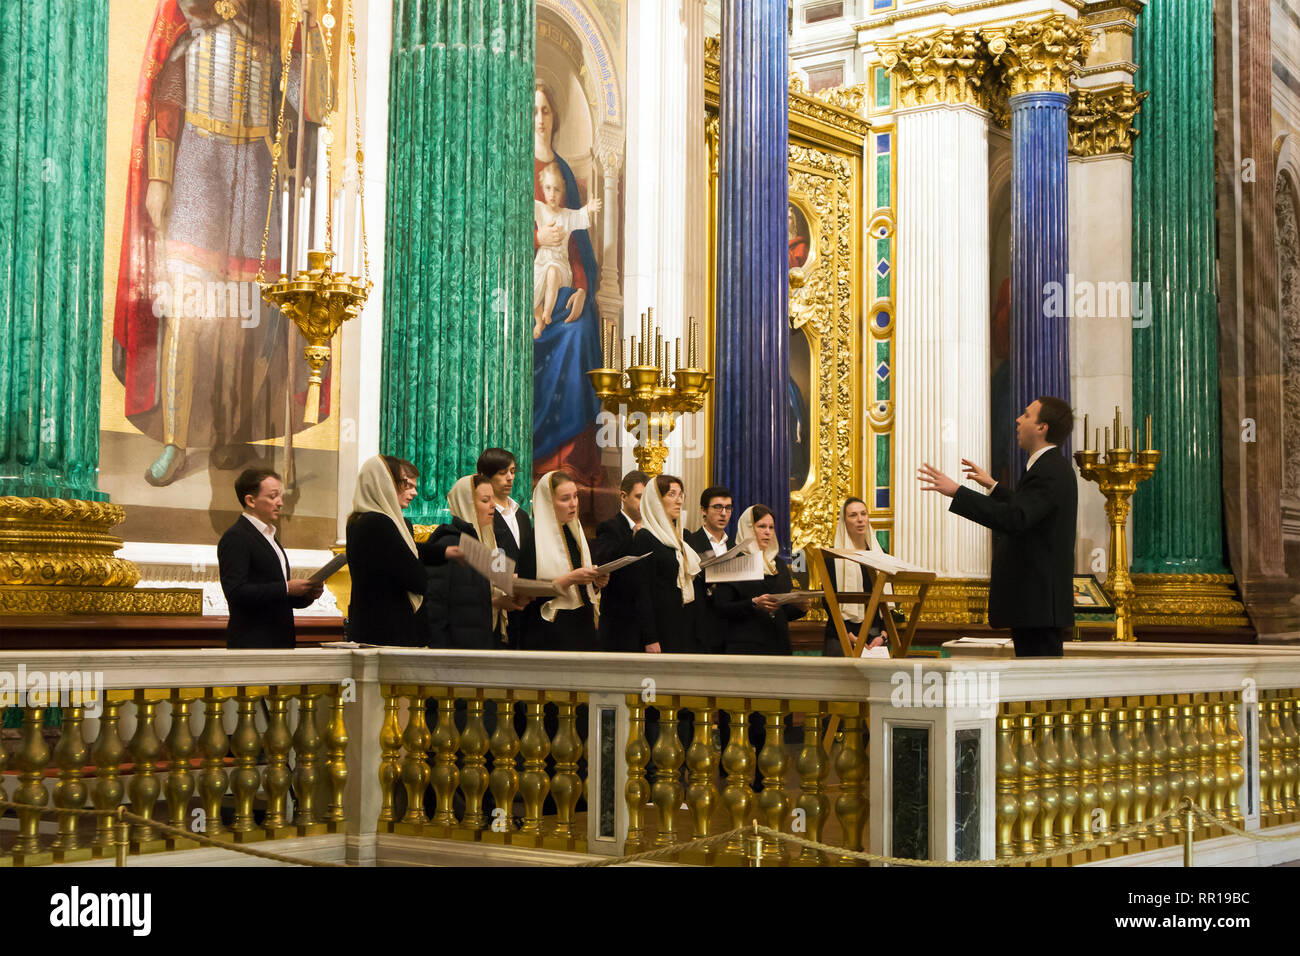 Coro della chiesa con il conduttore che cantano durante il servizio in chiesa di San Isacco cattedrale ortodossa Foto Stock